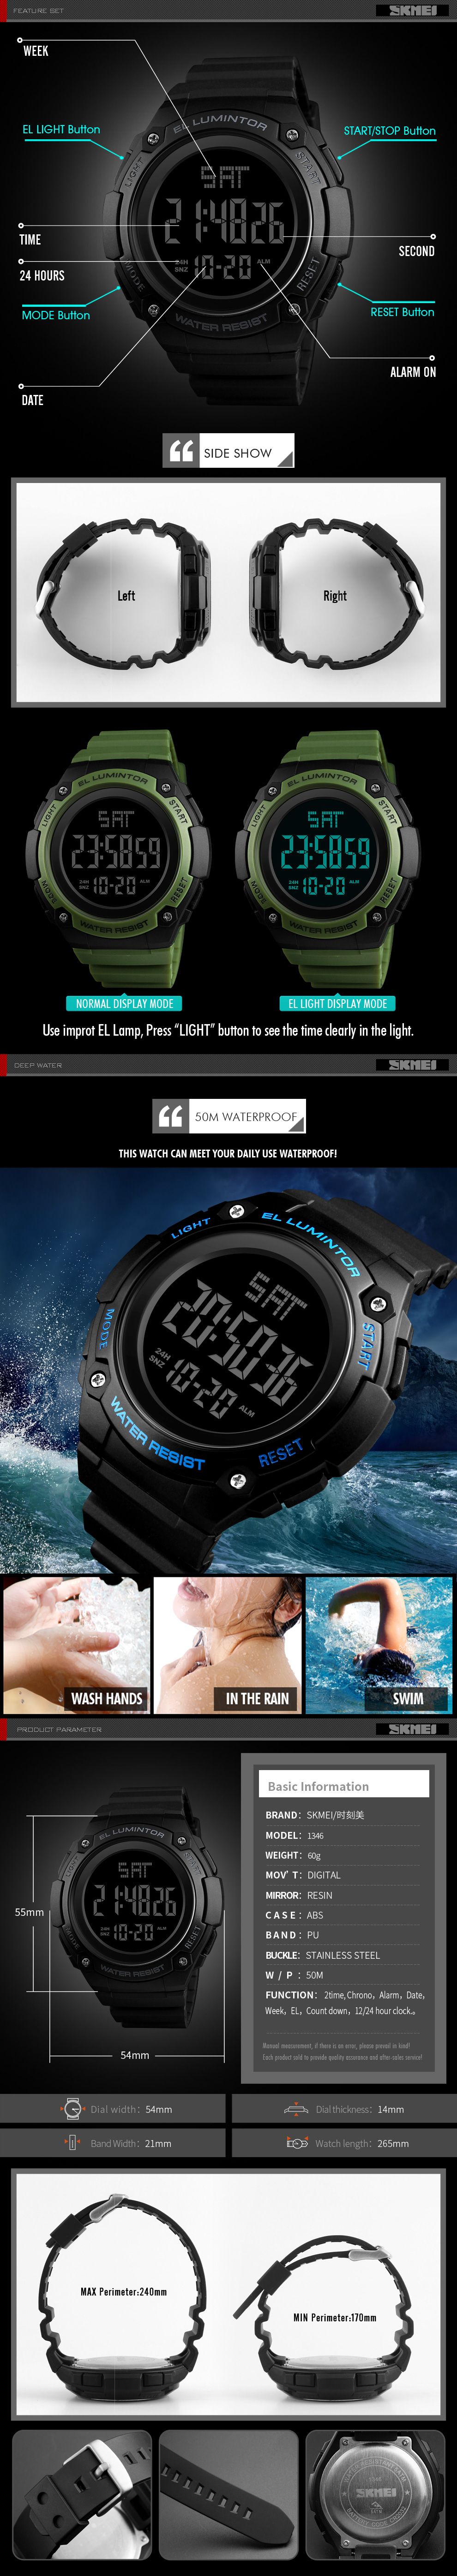 SKMEI 1346 Men Wholesale Watches in Bulk Waterproof Sport Digital Wrist Watch